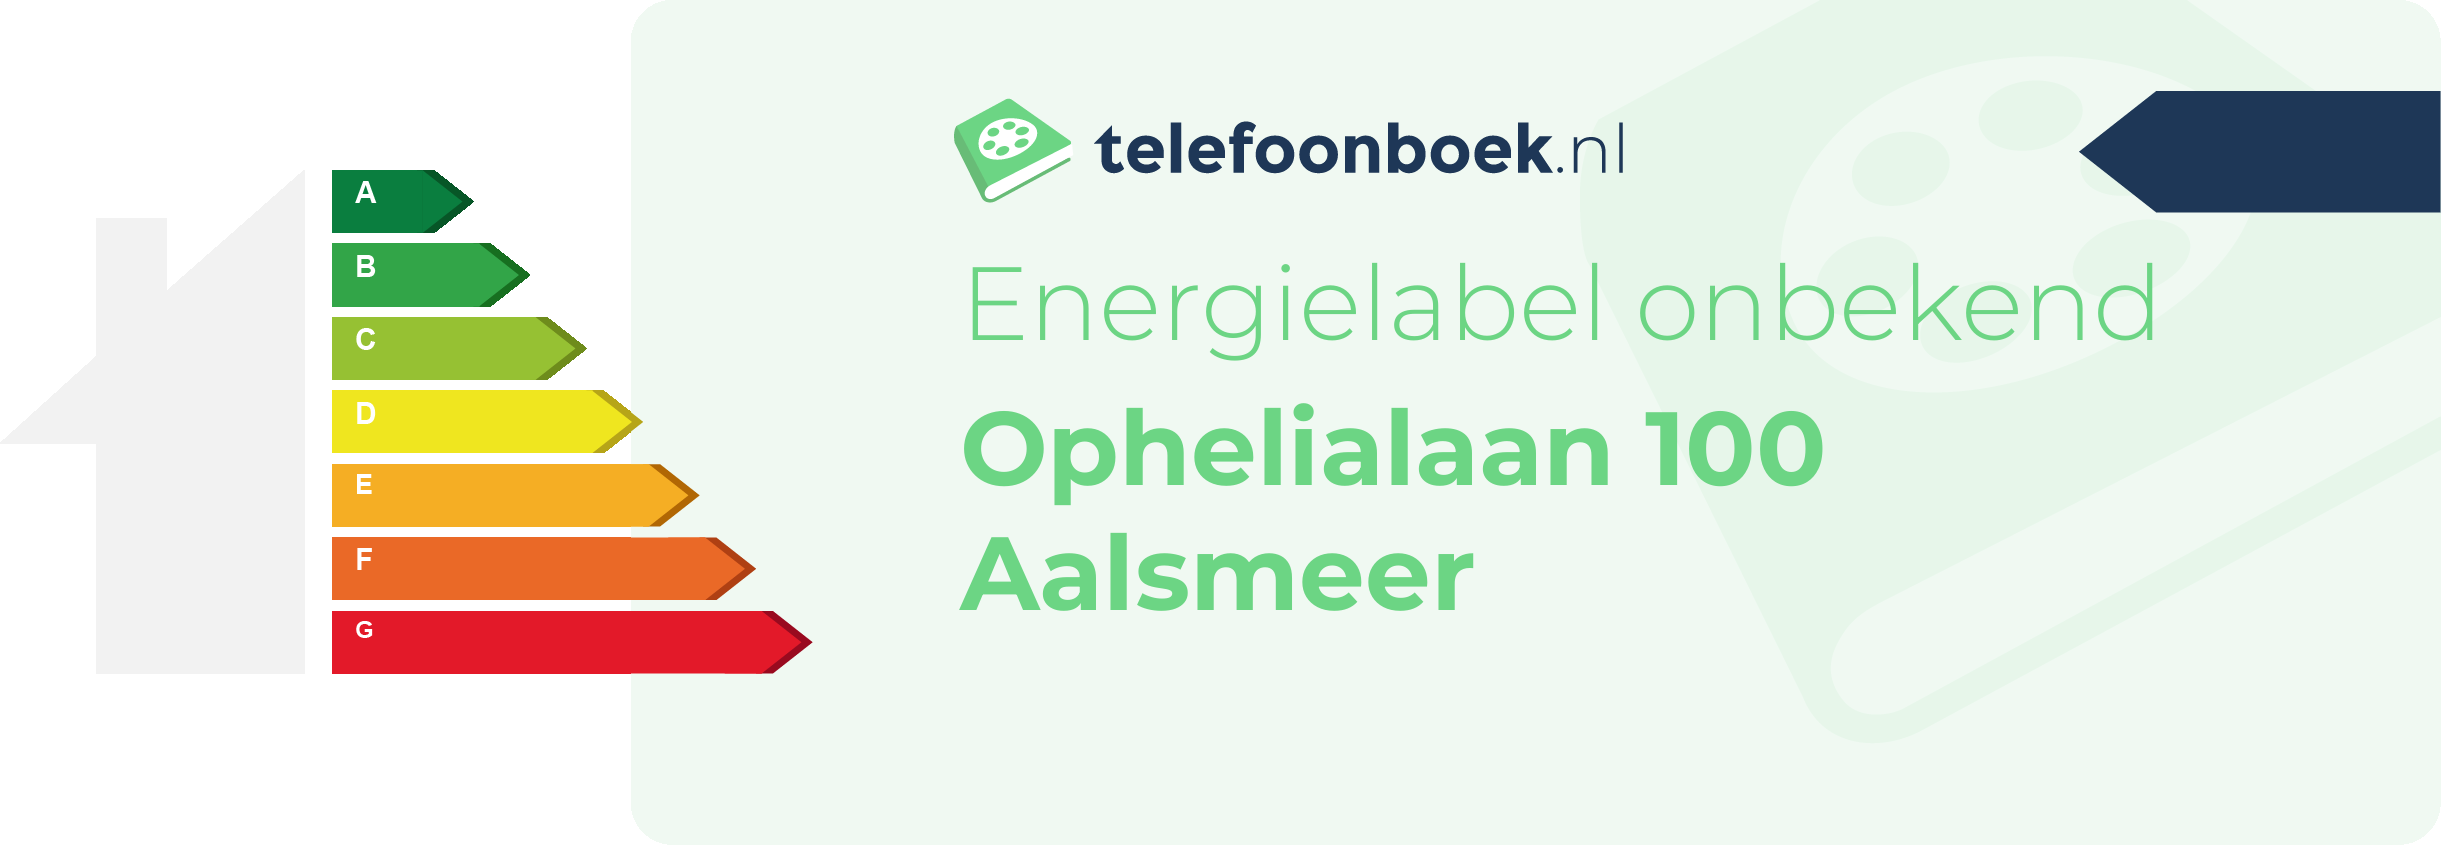 Energielabel Ophelialaan 100 Aalsmeer